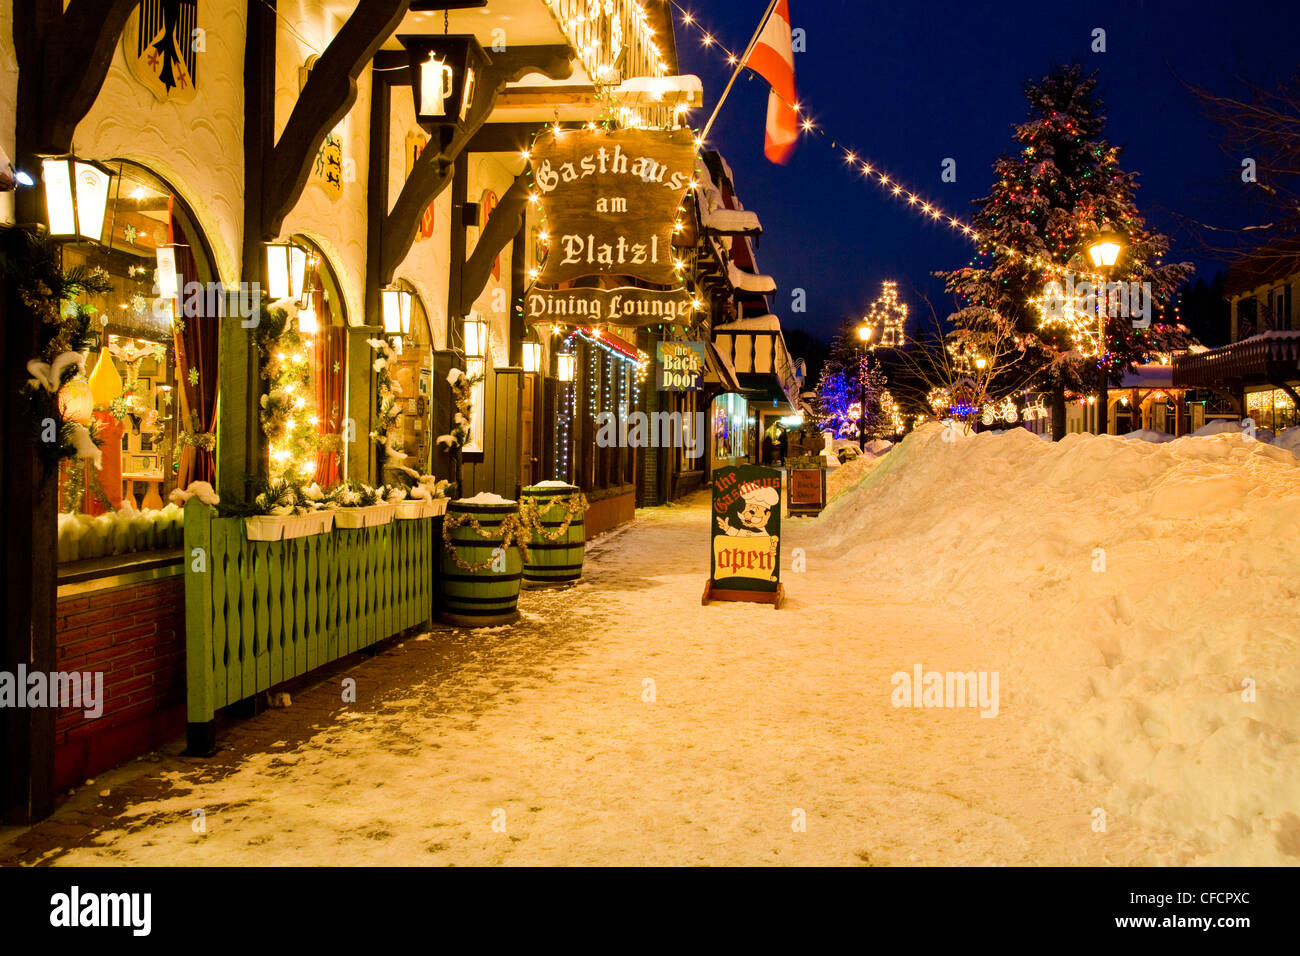 The Platz at night in winter, Kimberley, British Columbia, Canada. Stock Photo